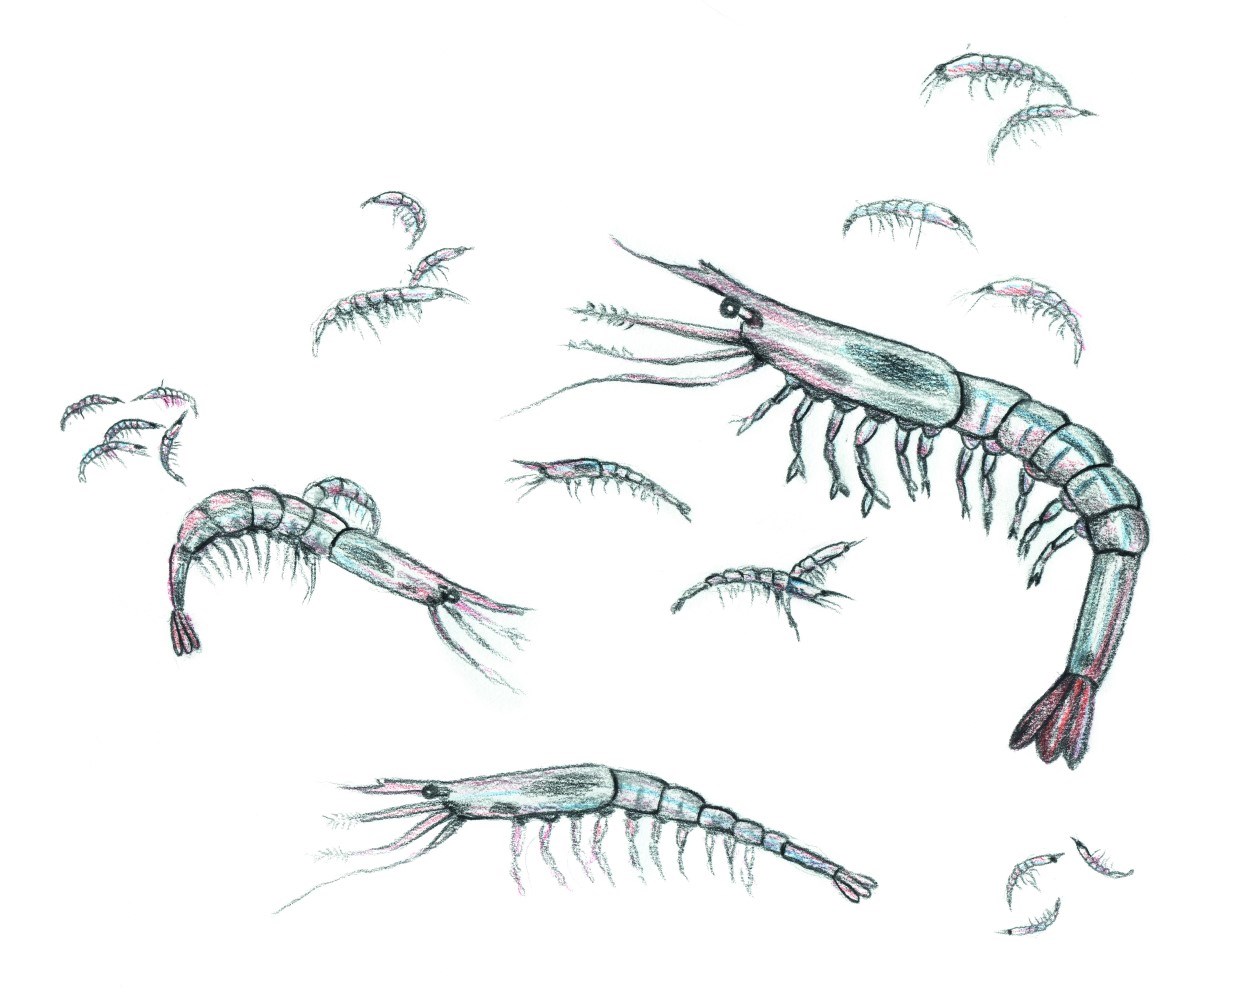 Shrimp illustration lifecycle